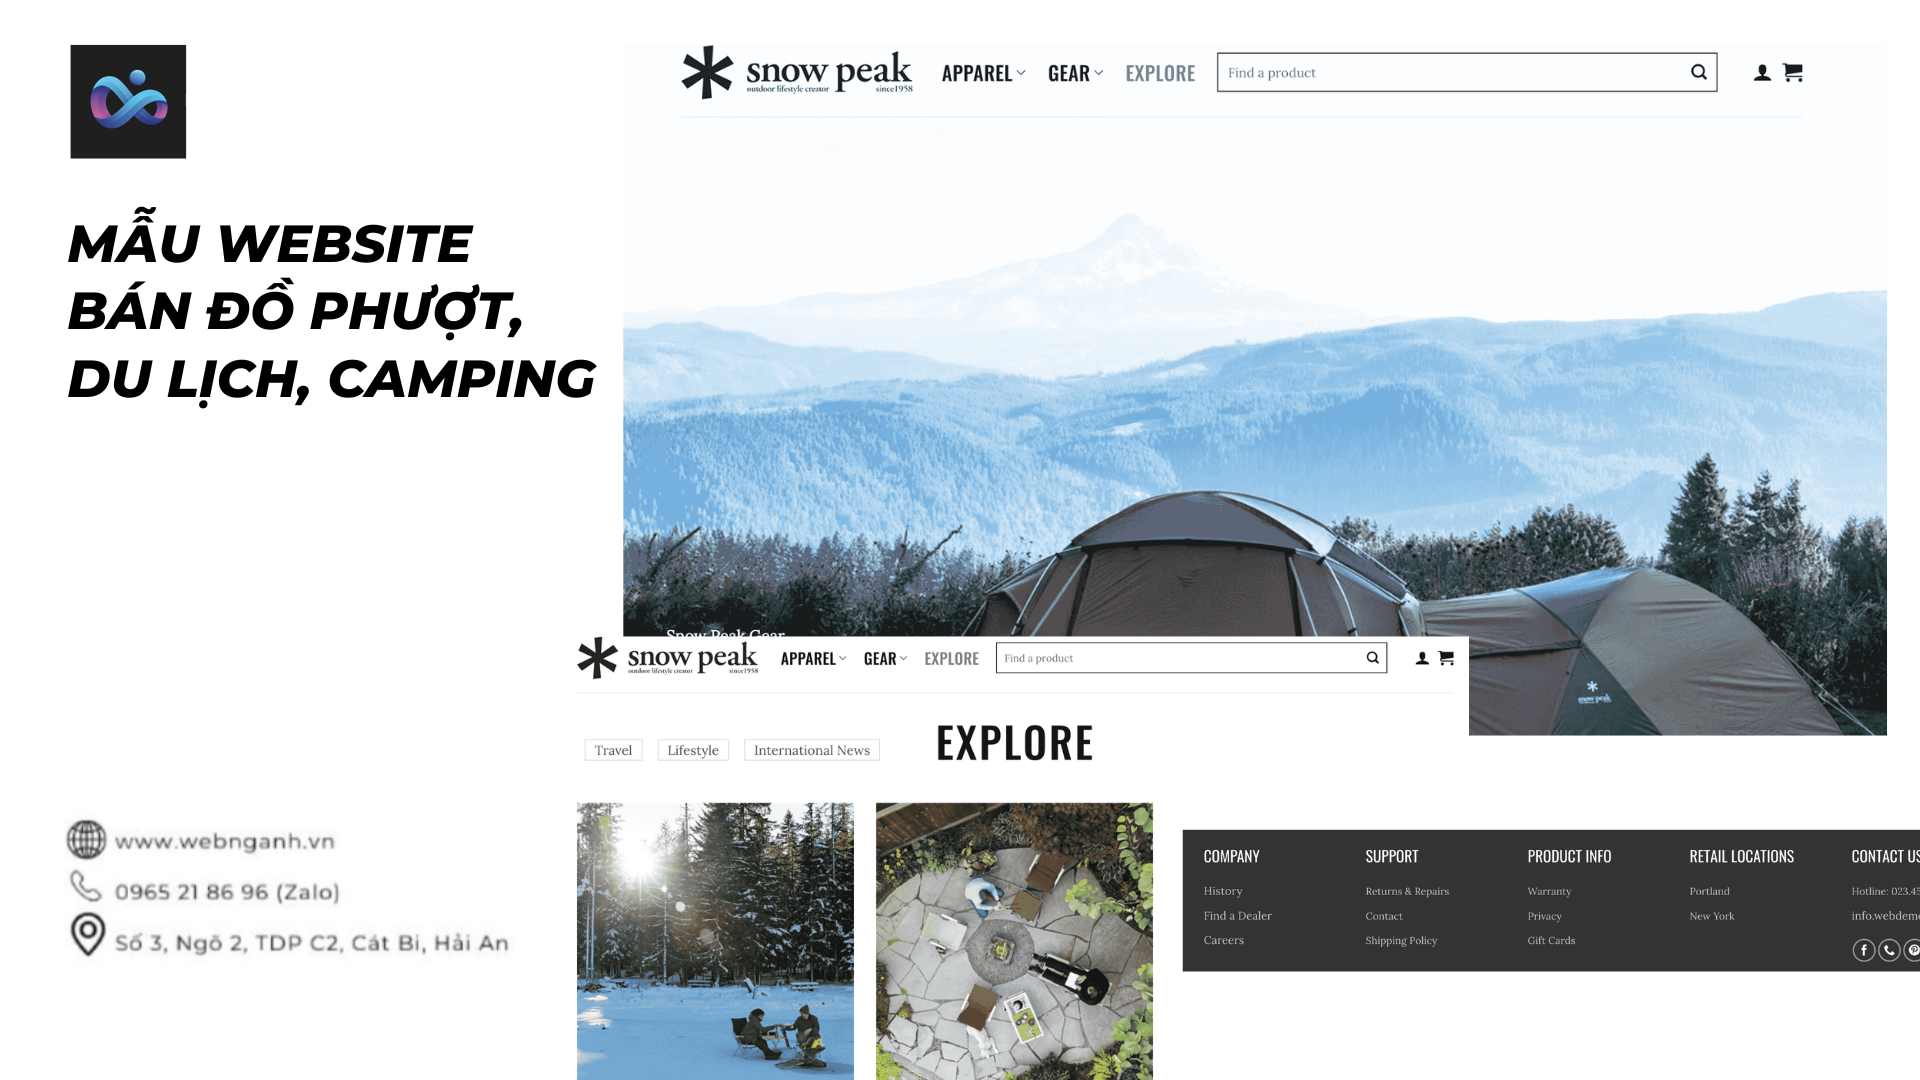 Website bán đồ du lịch, phượt, camping